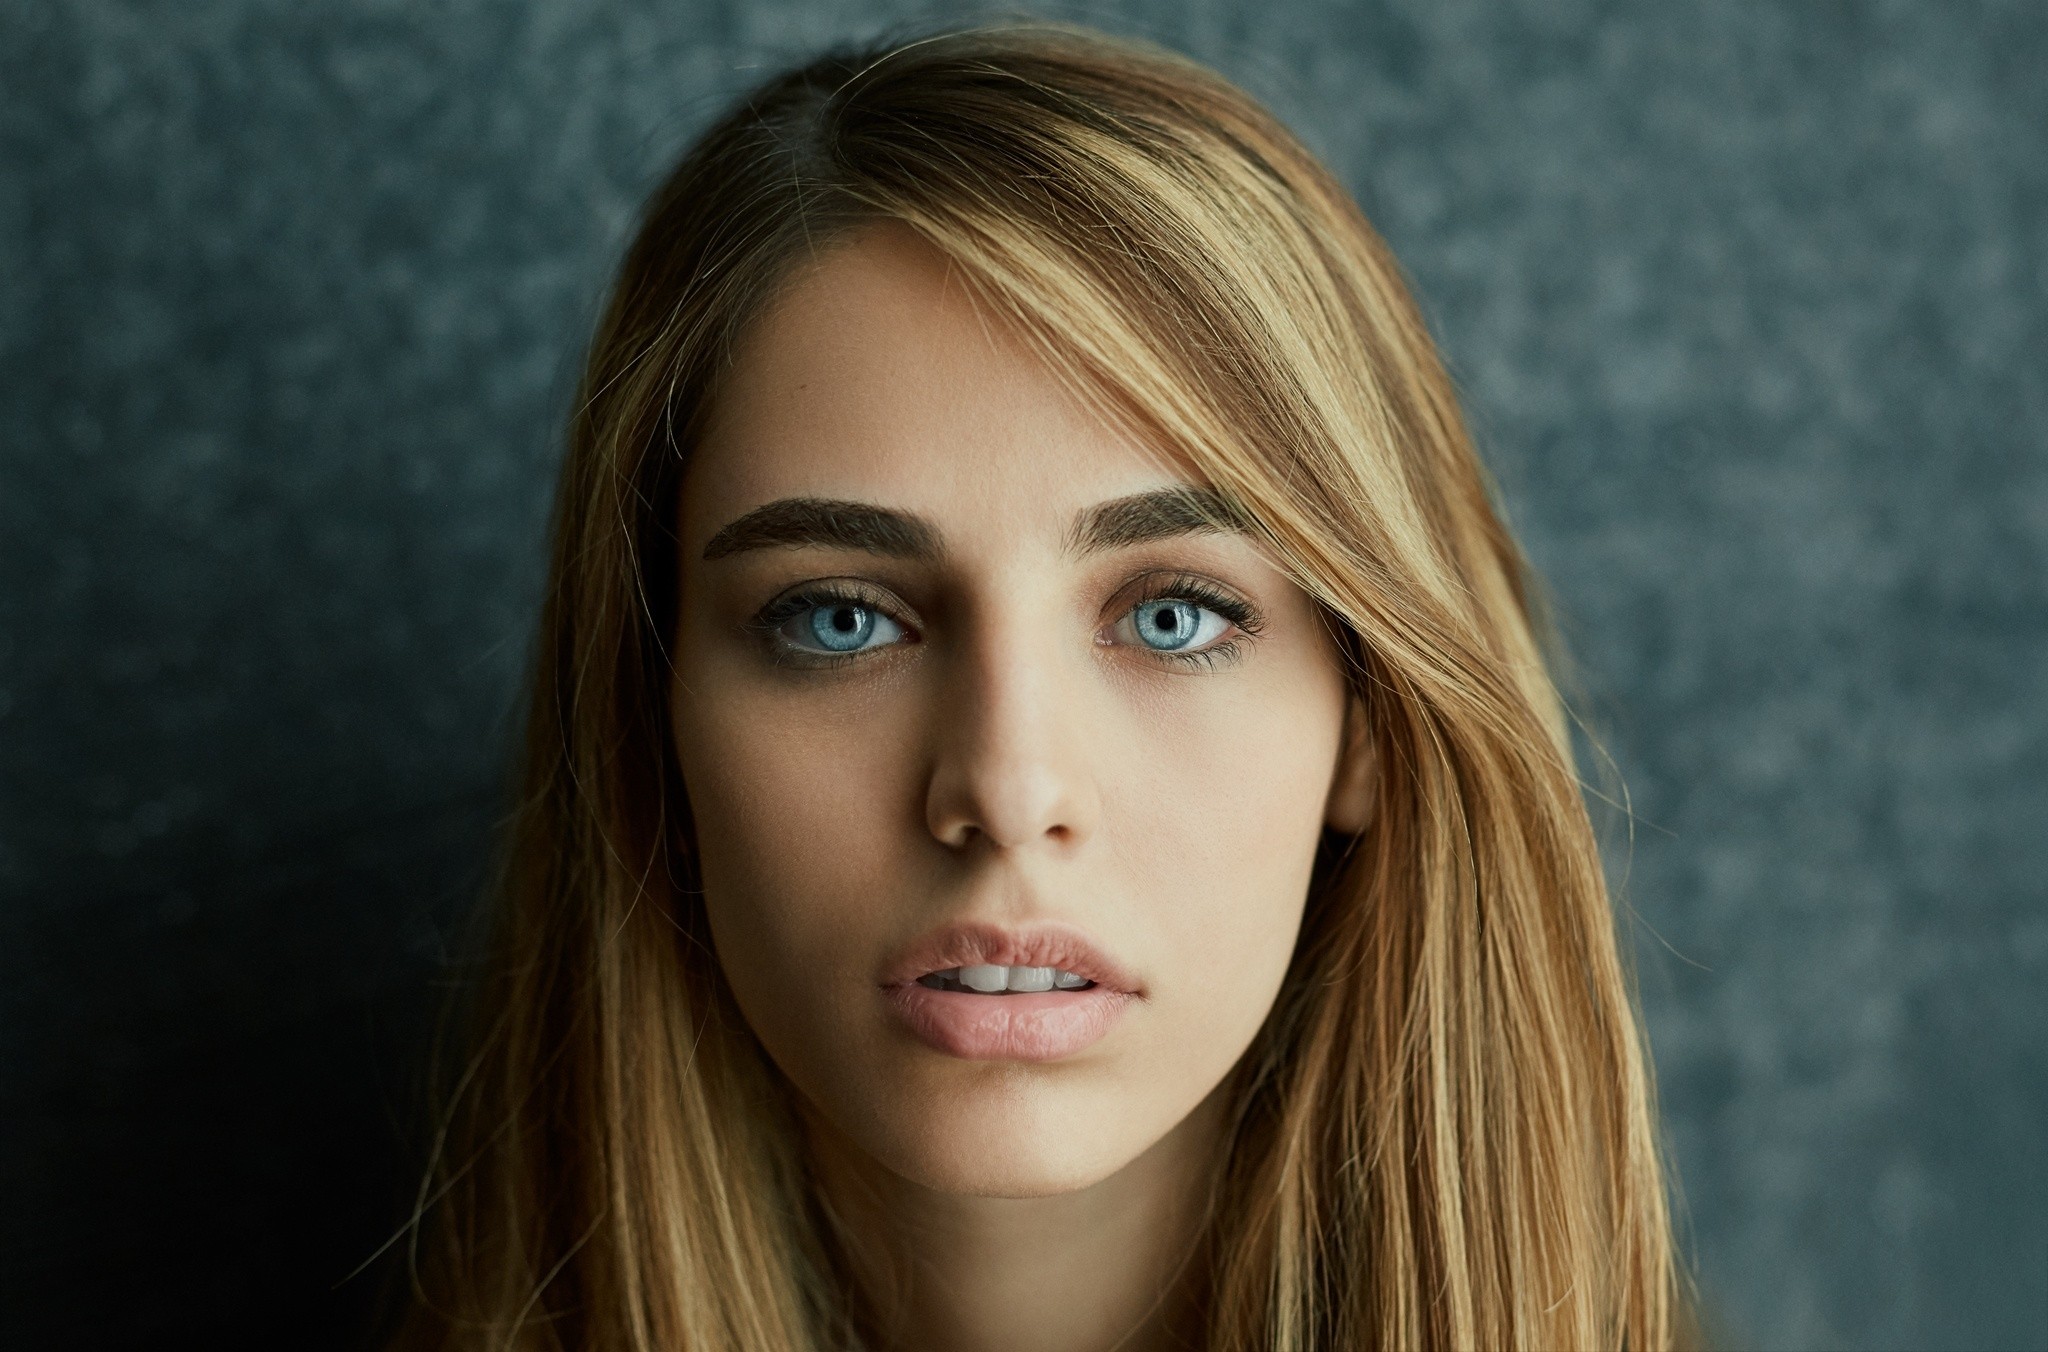 People 2048x1352 women face portrait blue eyes blonde model